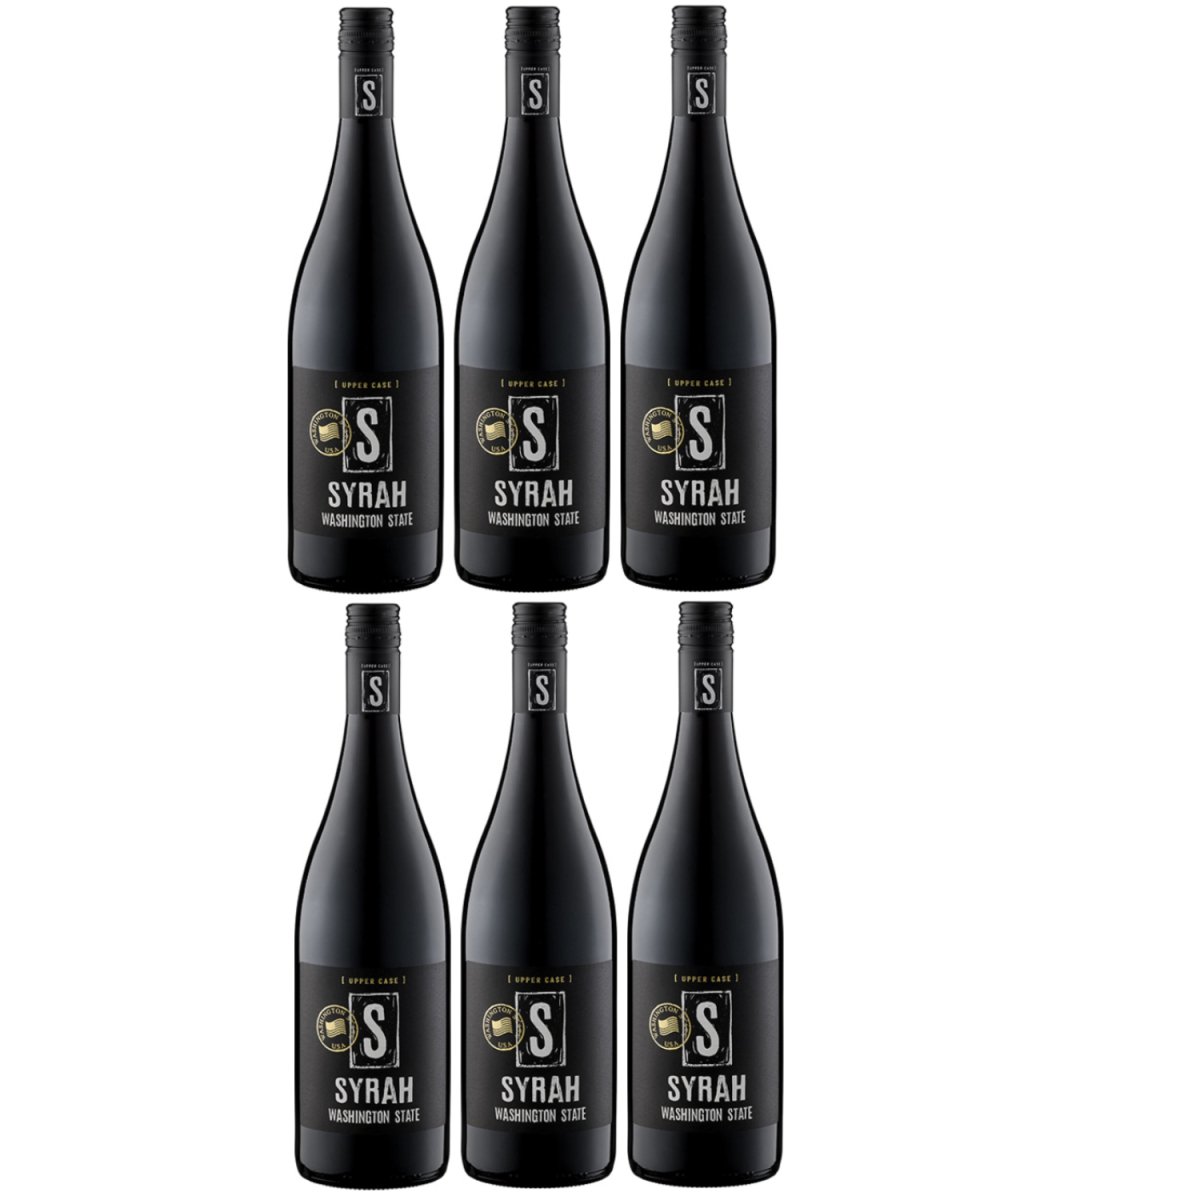 UPPER CASE S Syrah Washington State Rotwein Wein Trocken USA (6 x 0,75l) - Versanel -